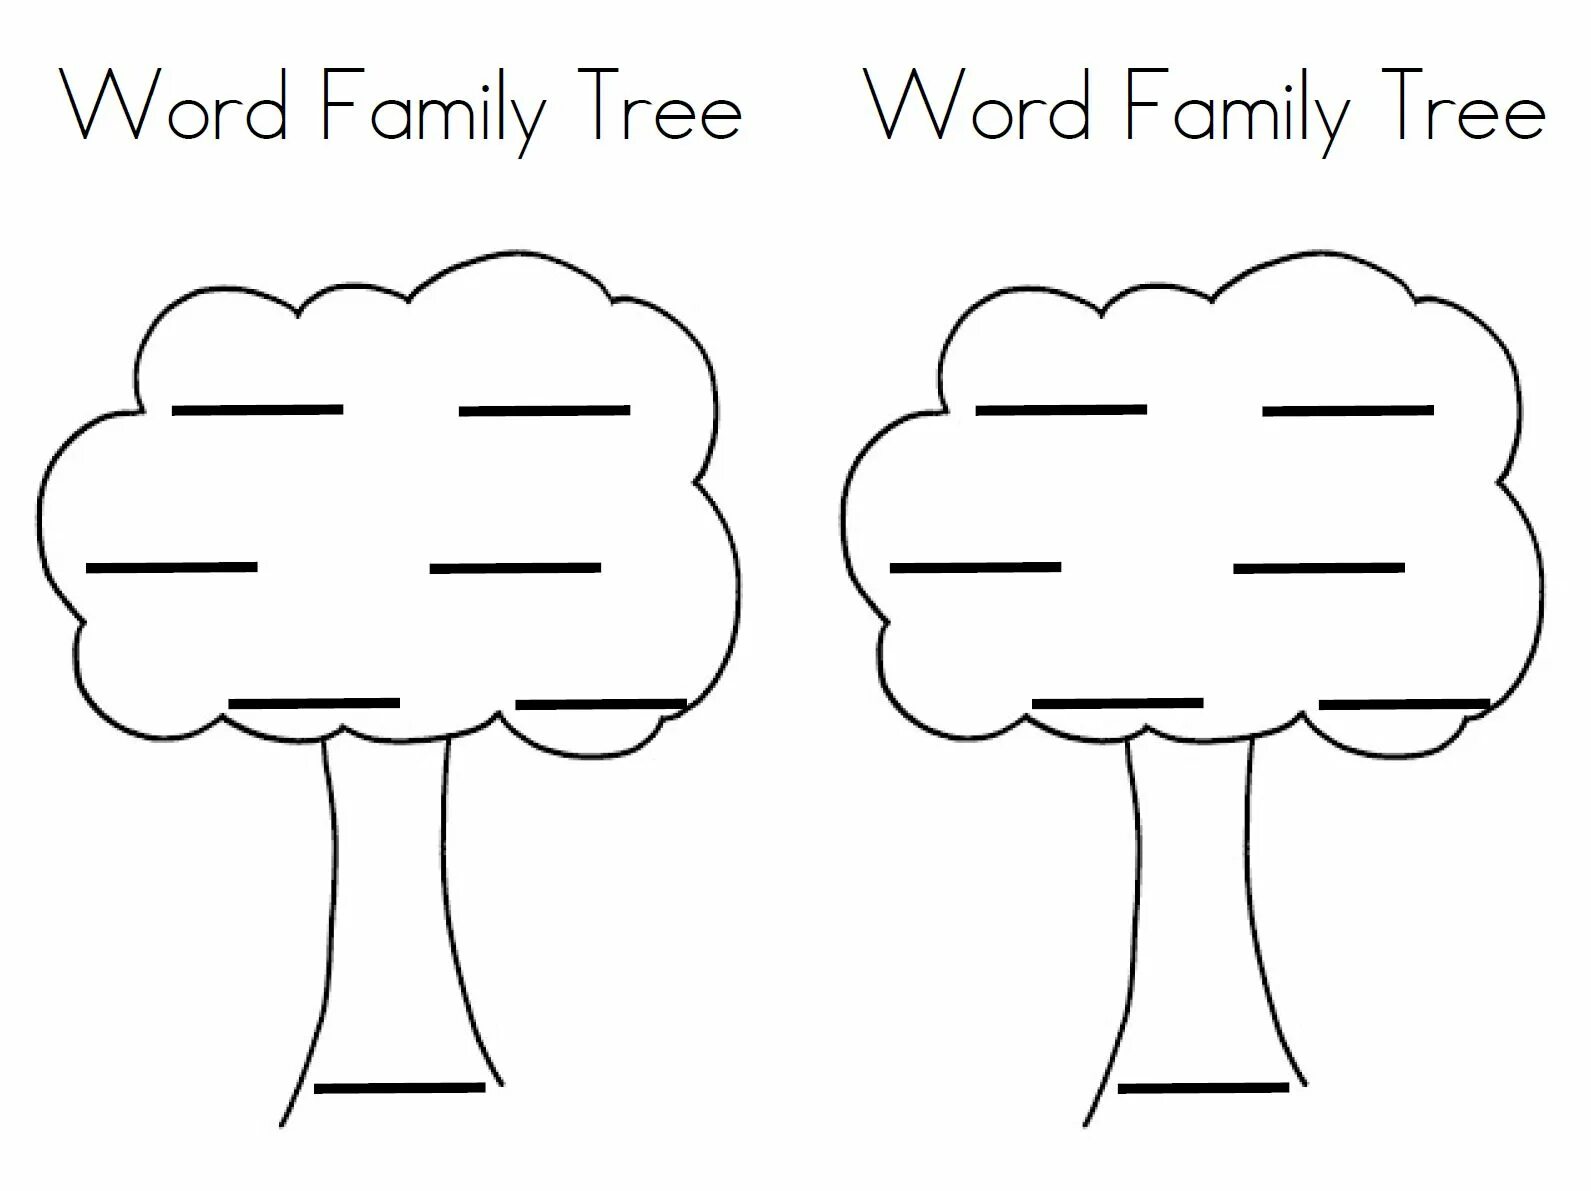 Tree words. Family Tree Words. Tree Word. Sight Words Tree шаблон. Family Tree with Words.